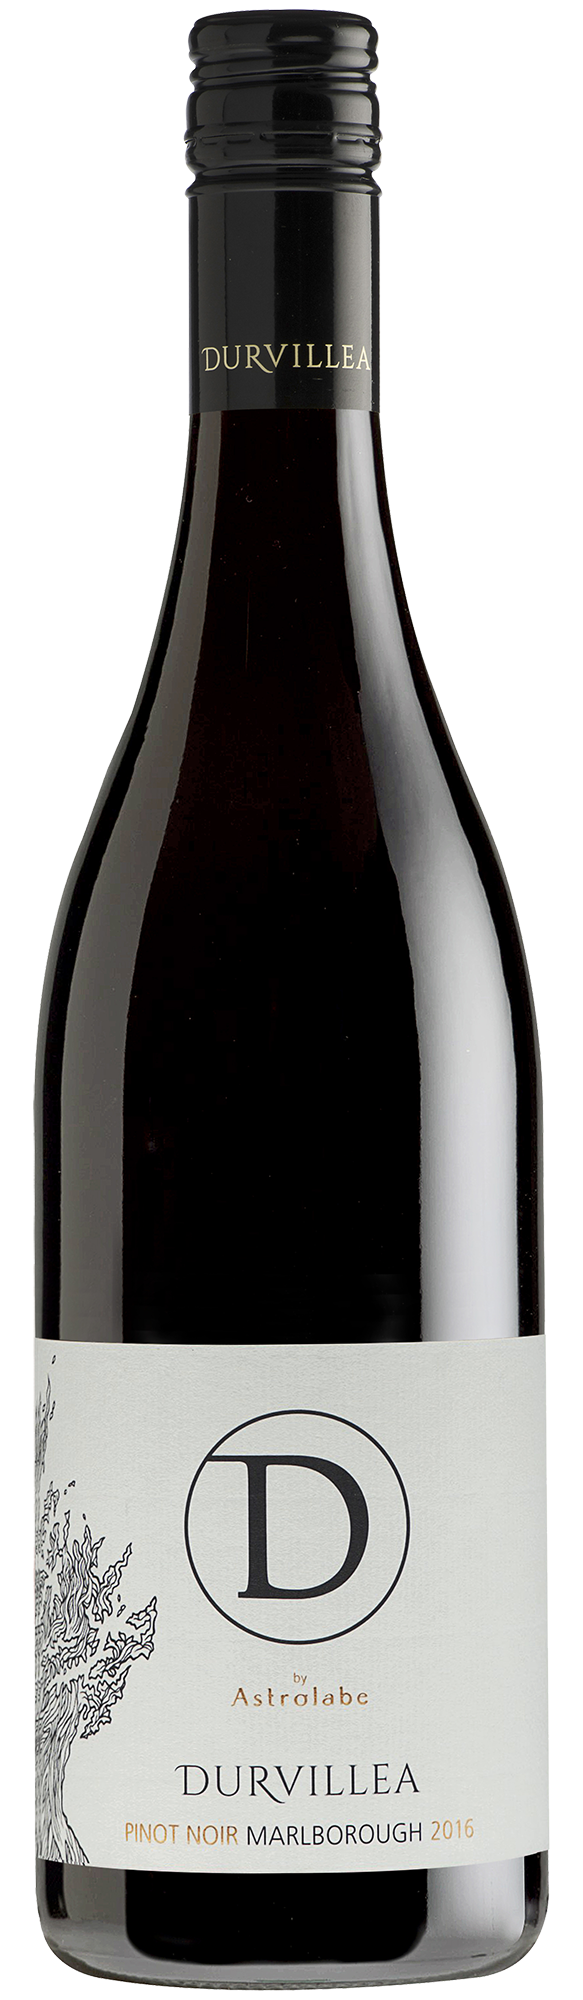 Bottle shot of 2016 Durvillea Pinot Noir